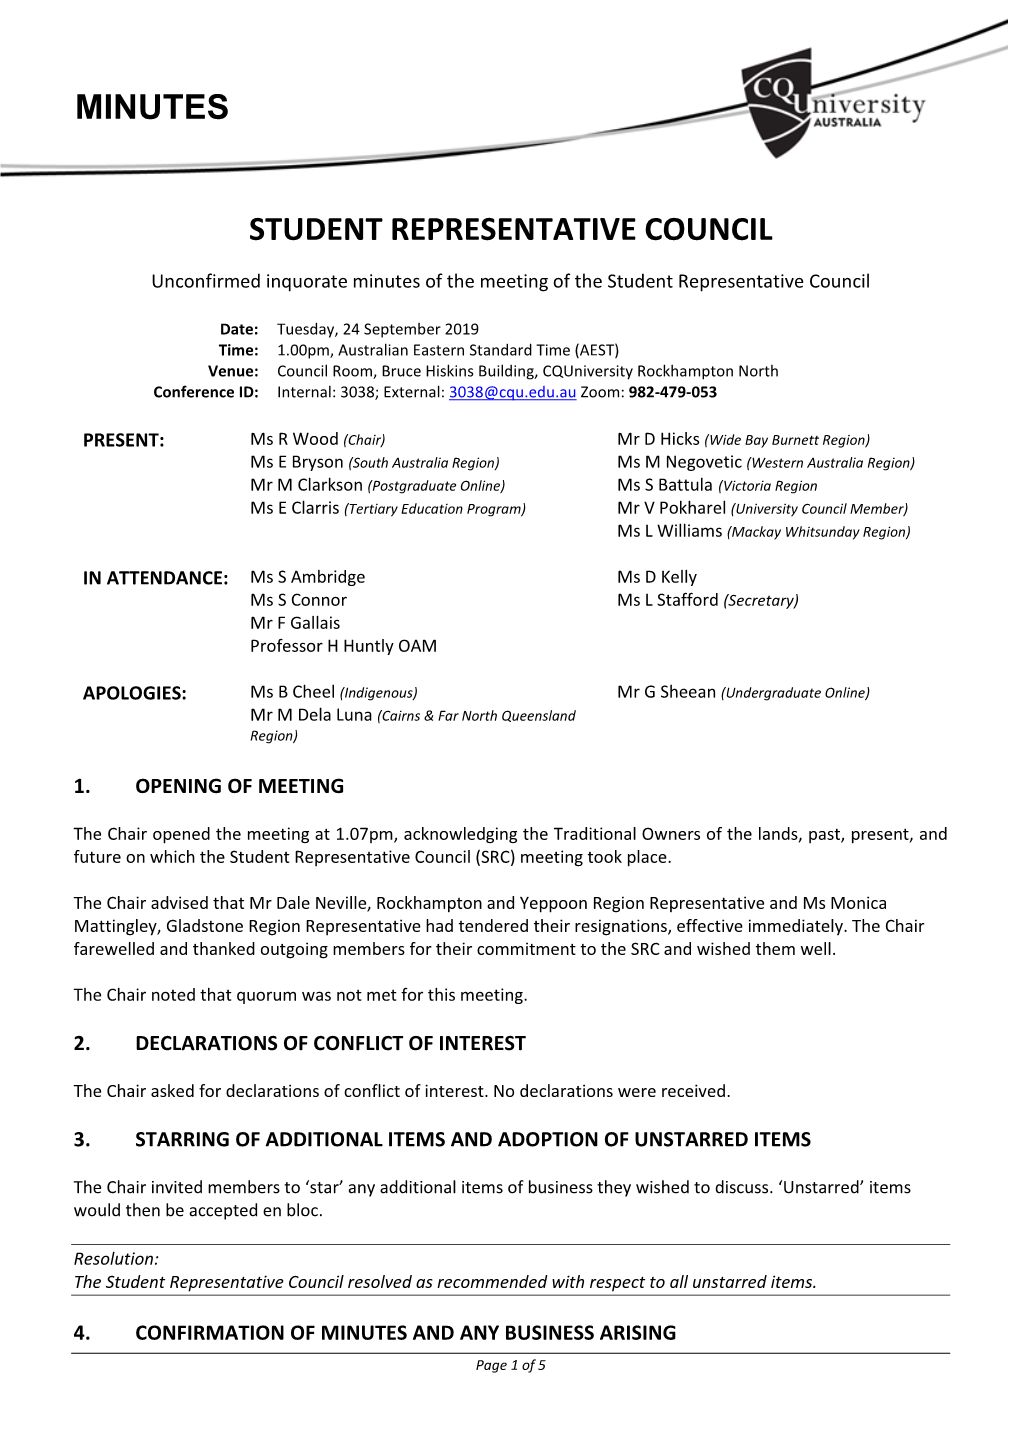 Student Representative Council Minutes